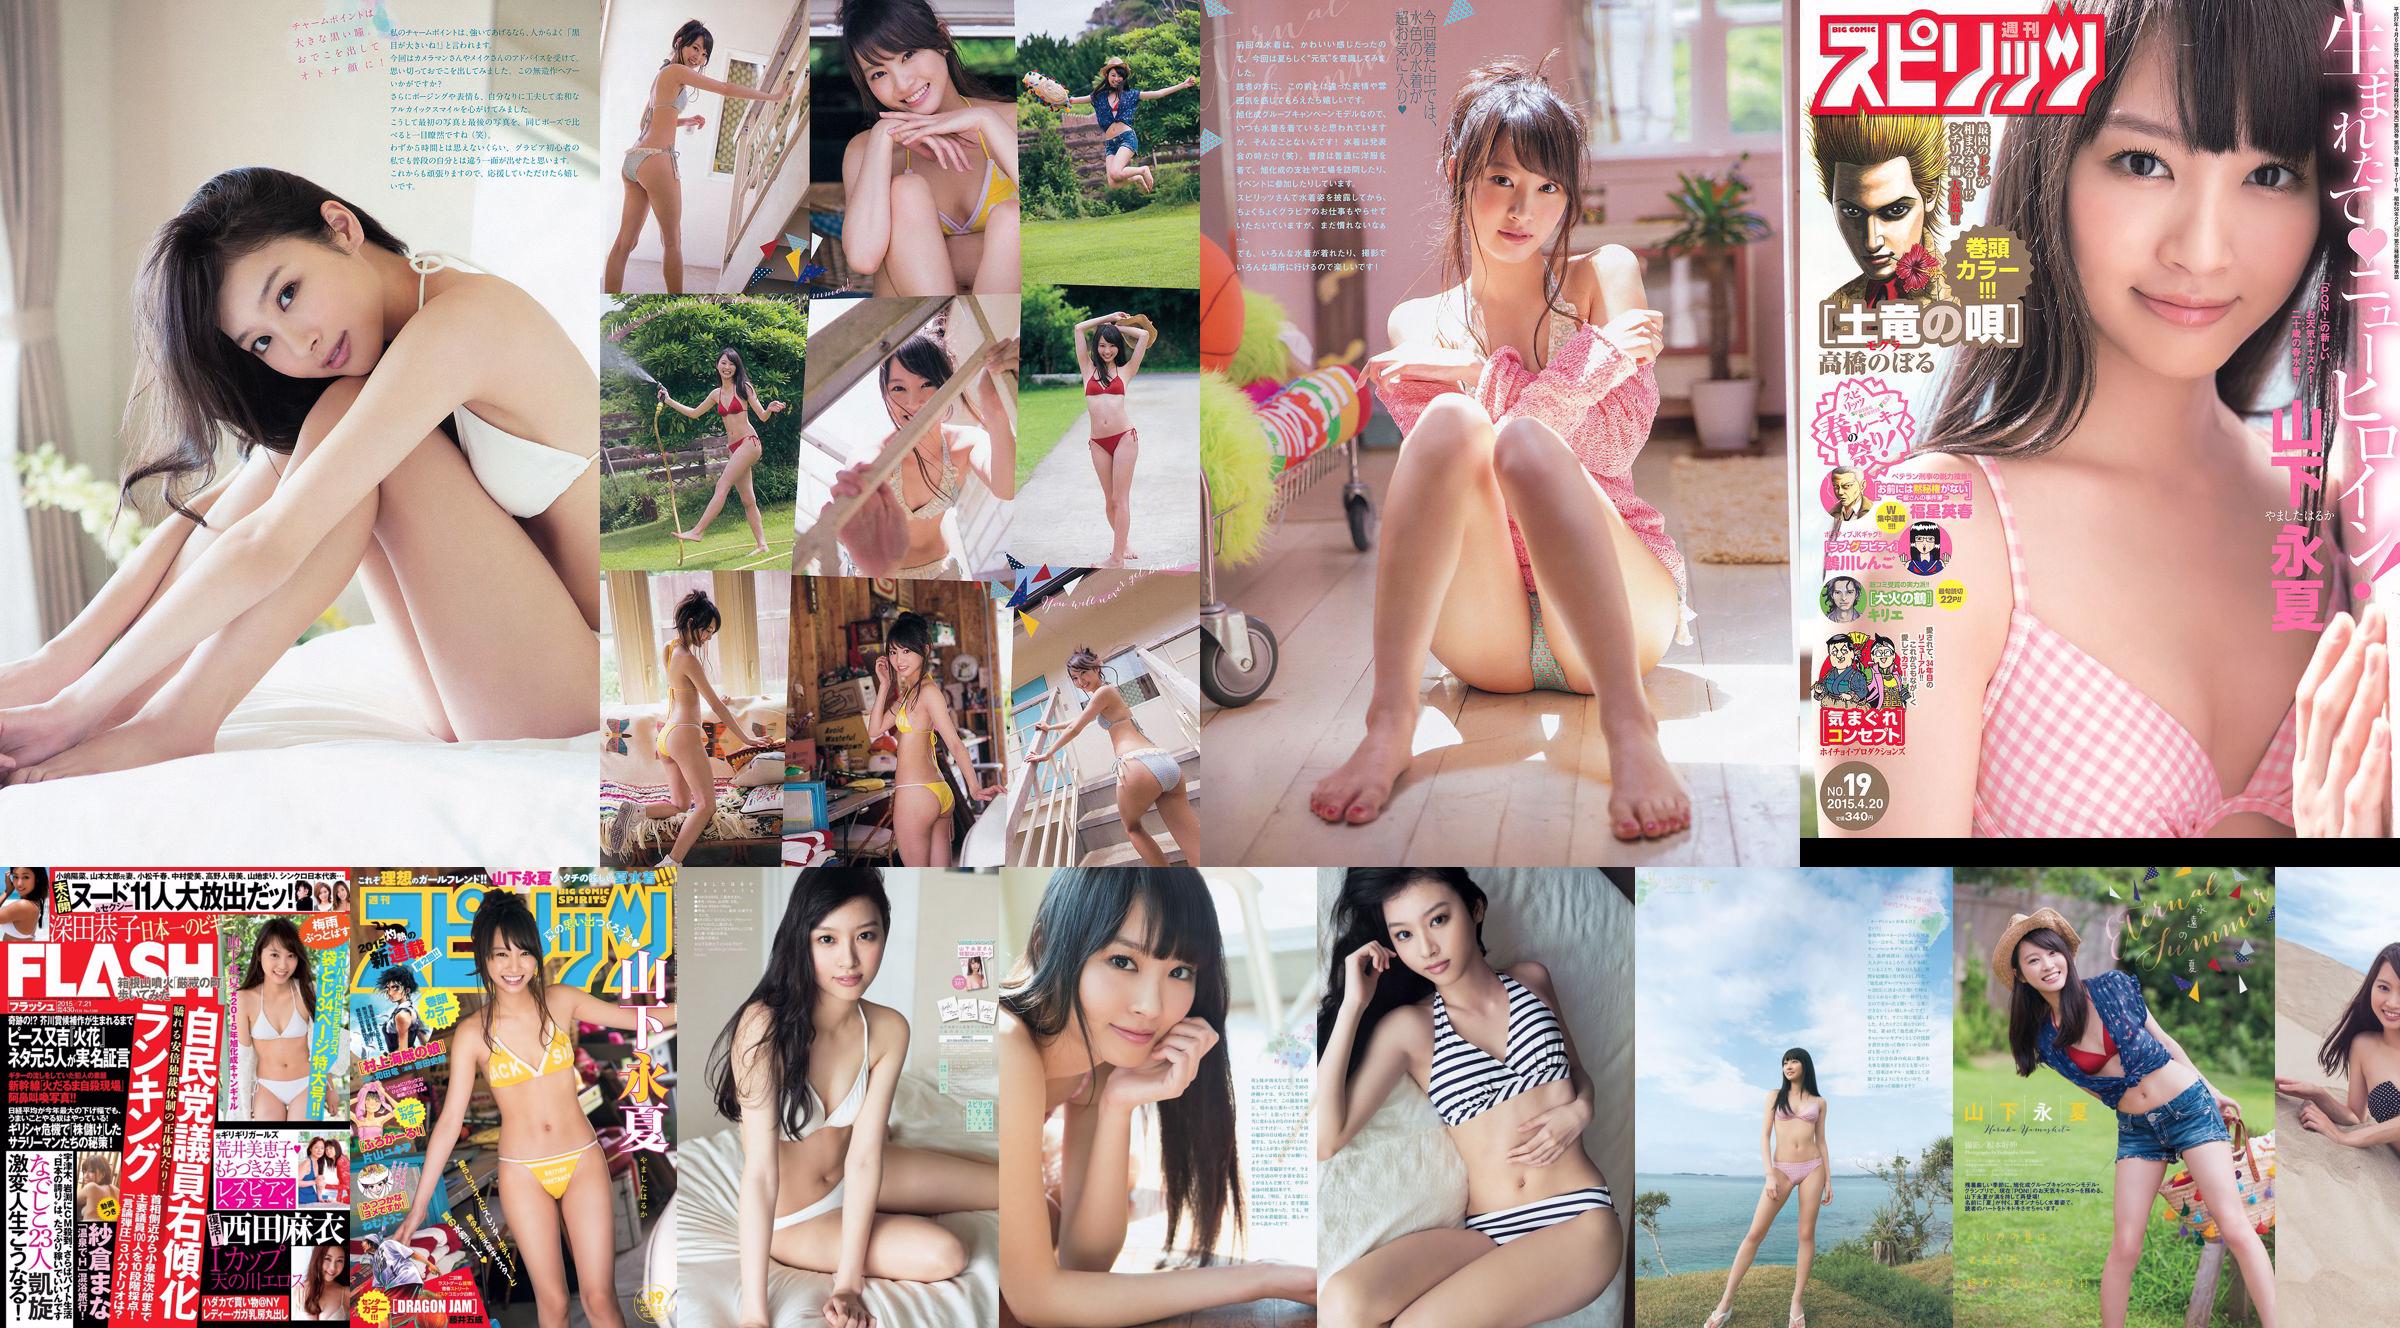 [Weekly Big Comic Spirits] Yamashita Yongxia 2015 No.19 Photo Magazine No.1aaed6 Page 1